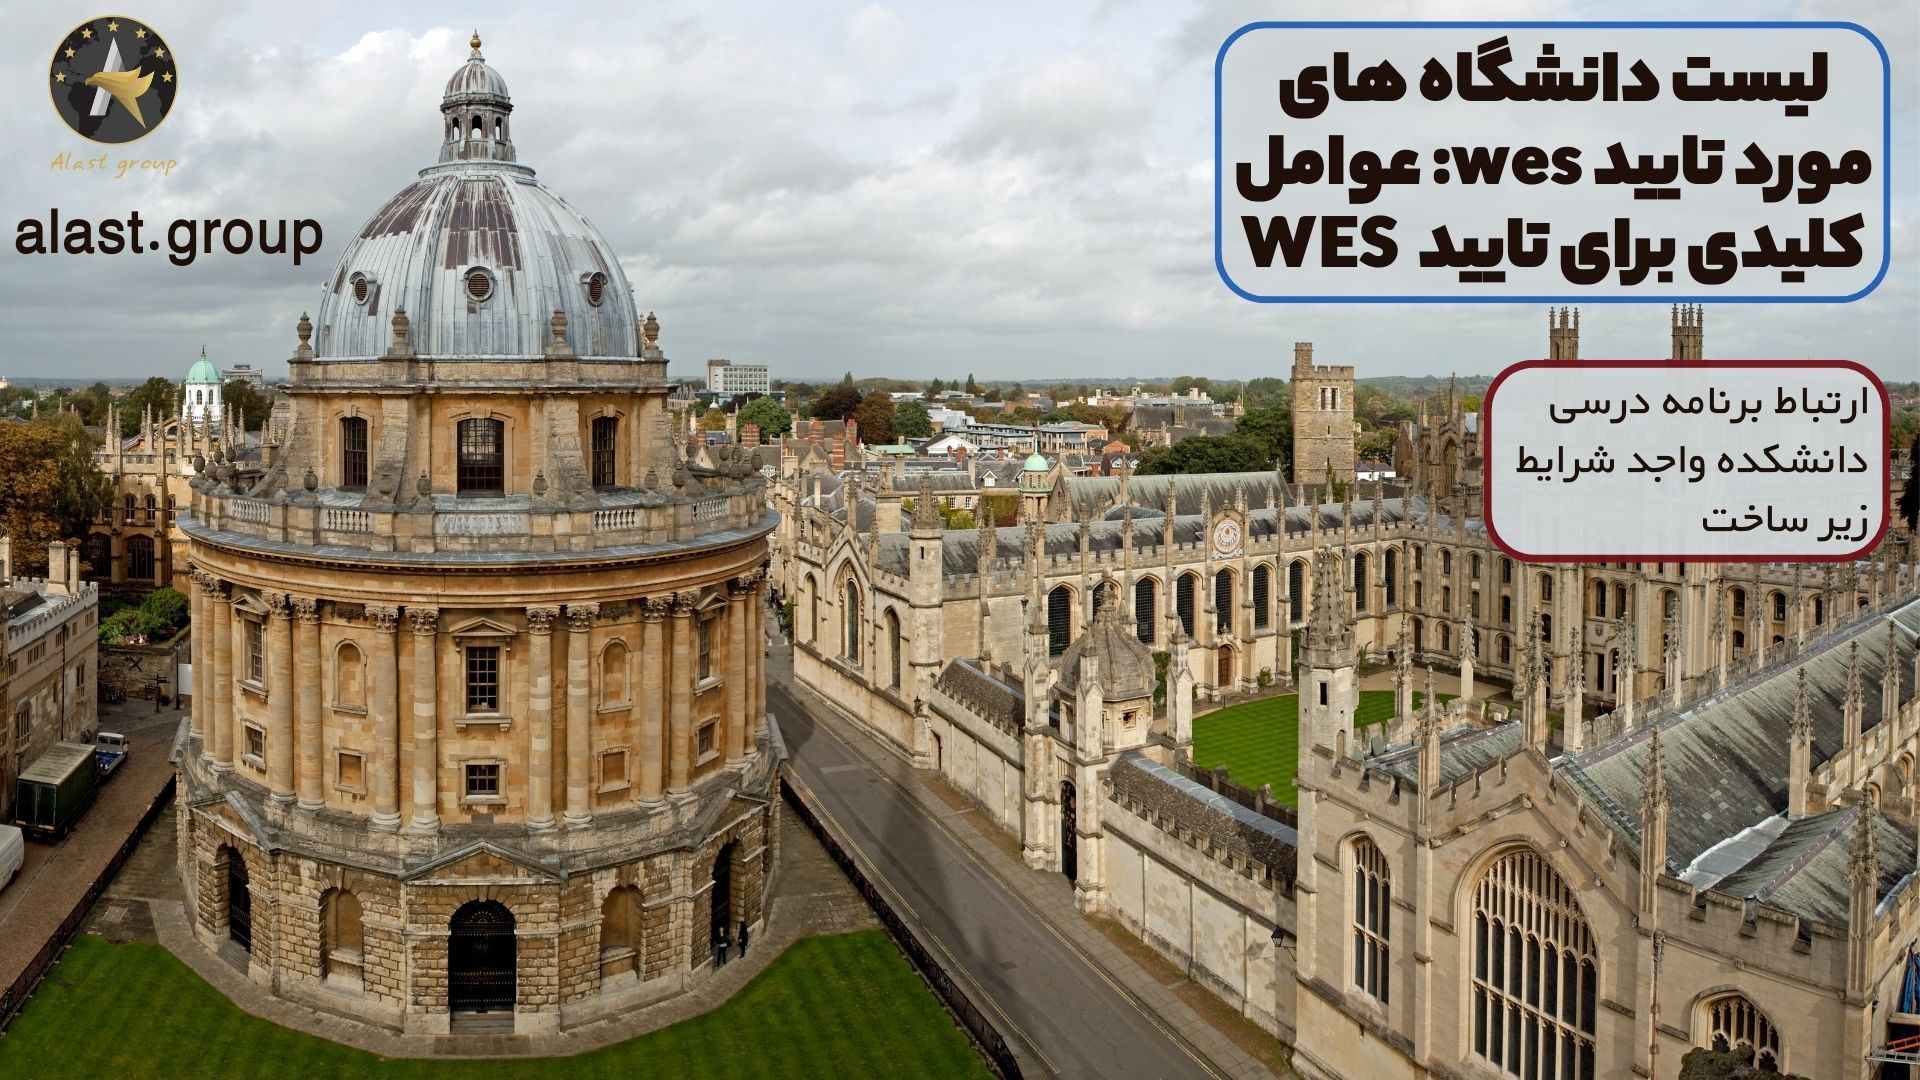 لیست دانشگاه های مورد تایید wes: عوامل کلیدی برای تایید WES